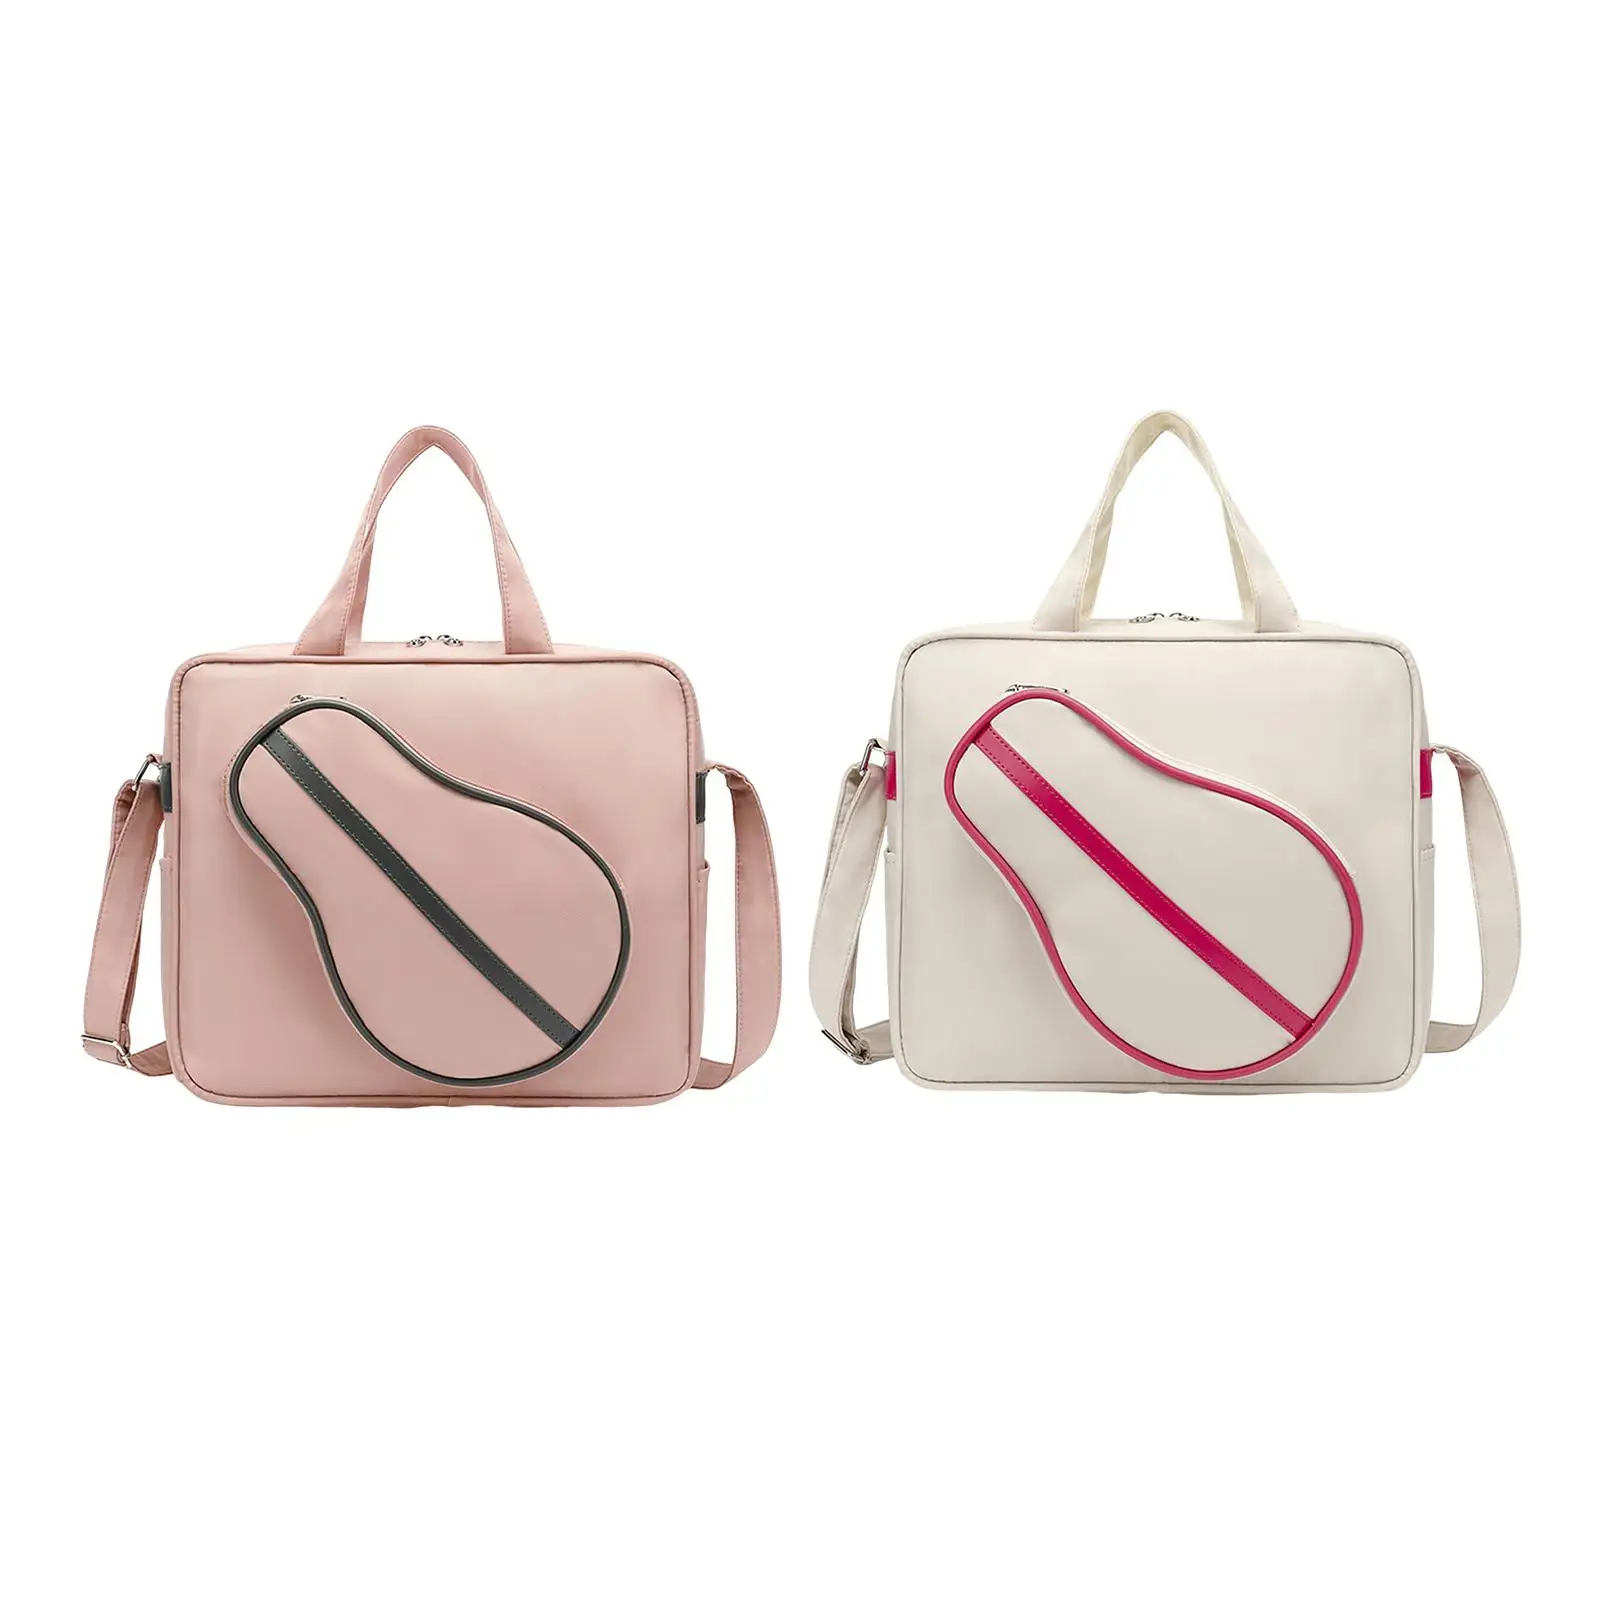 Table Tennis Shoulder Bag Water Resistant Handbag Adjustable Shoulder Strap